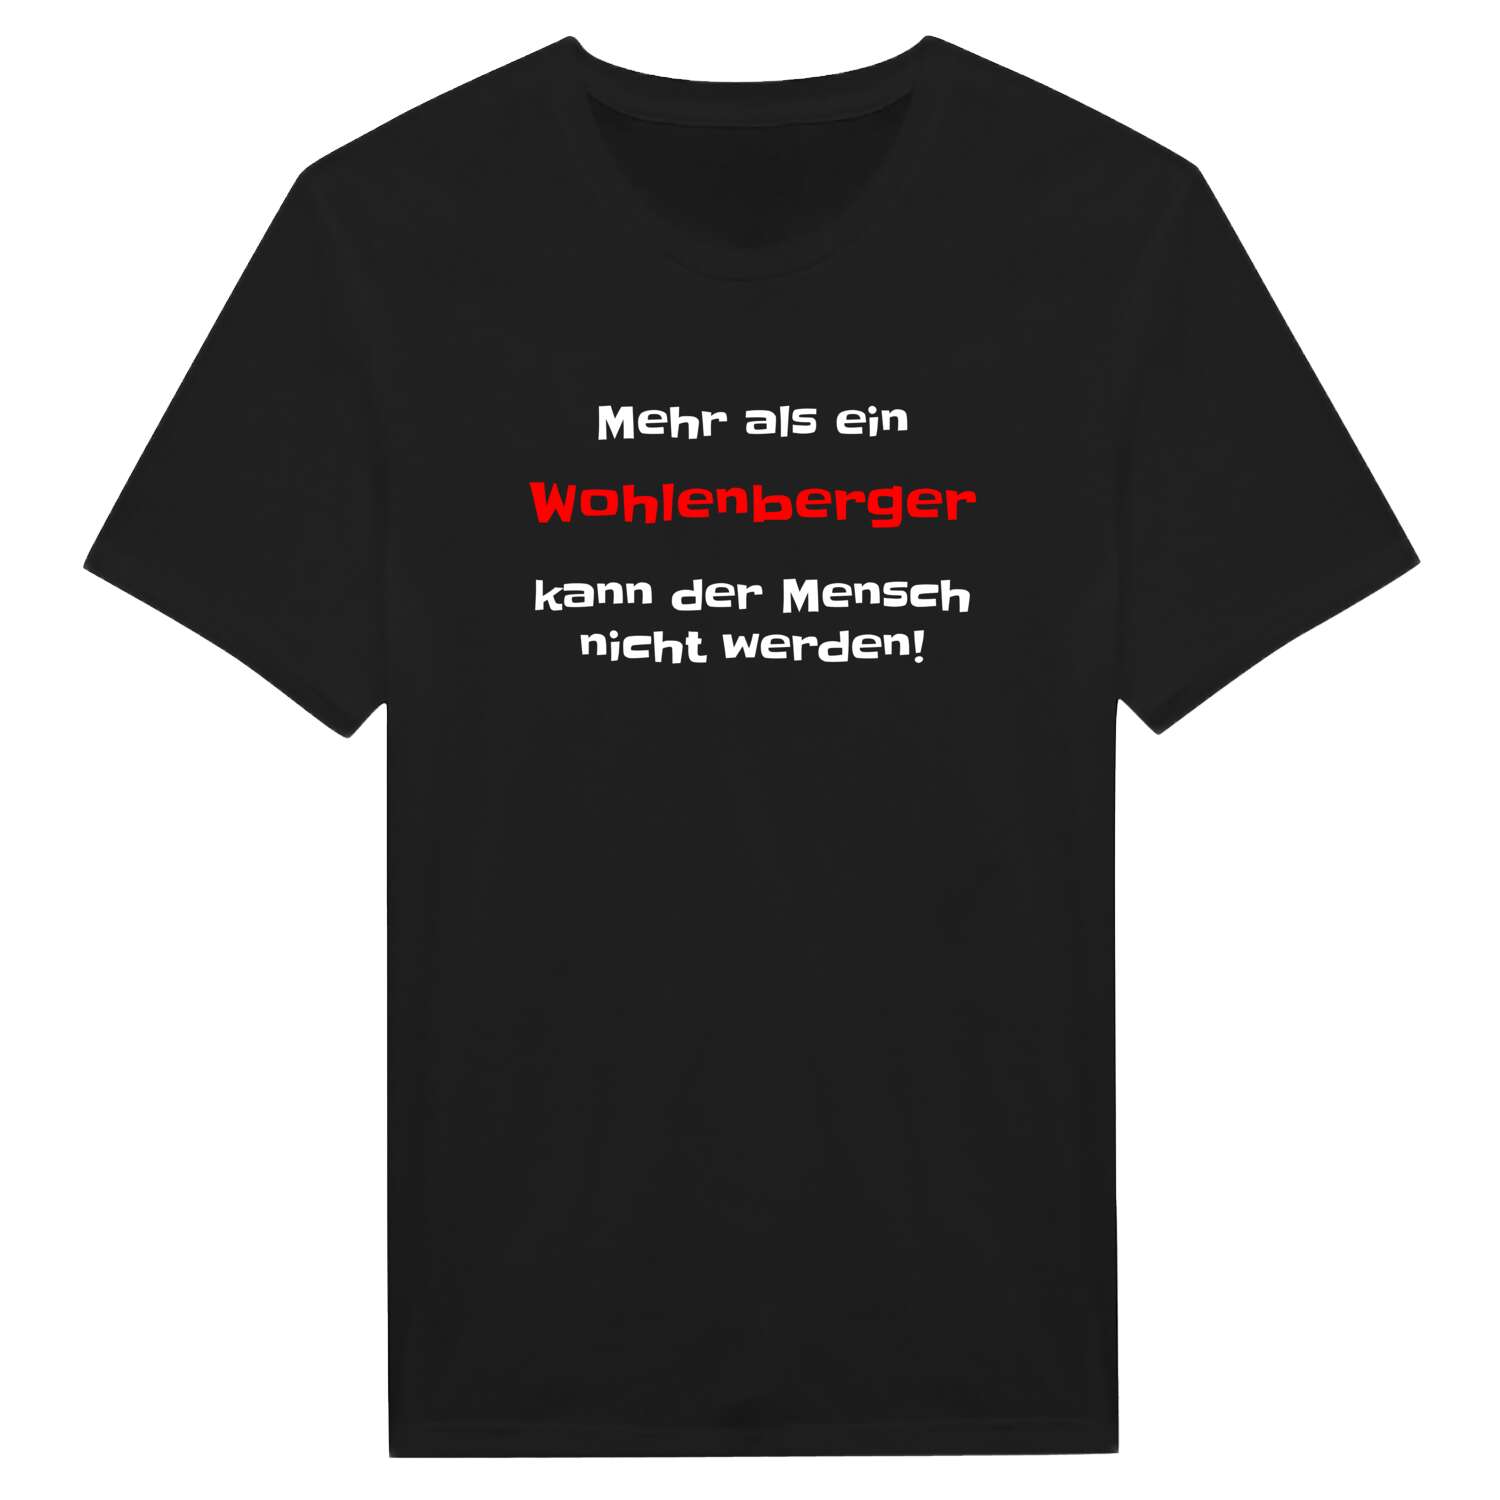 Wohlenberg T-Shirt »Mehr als ein«